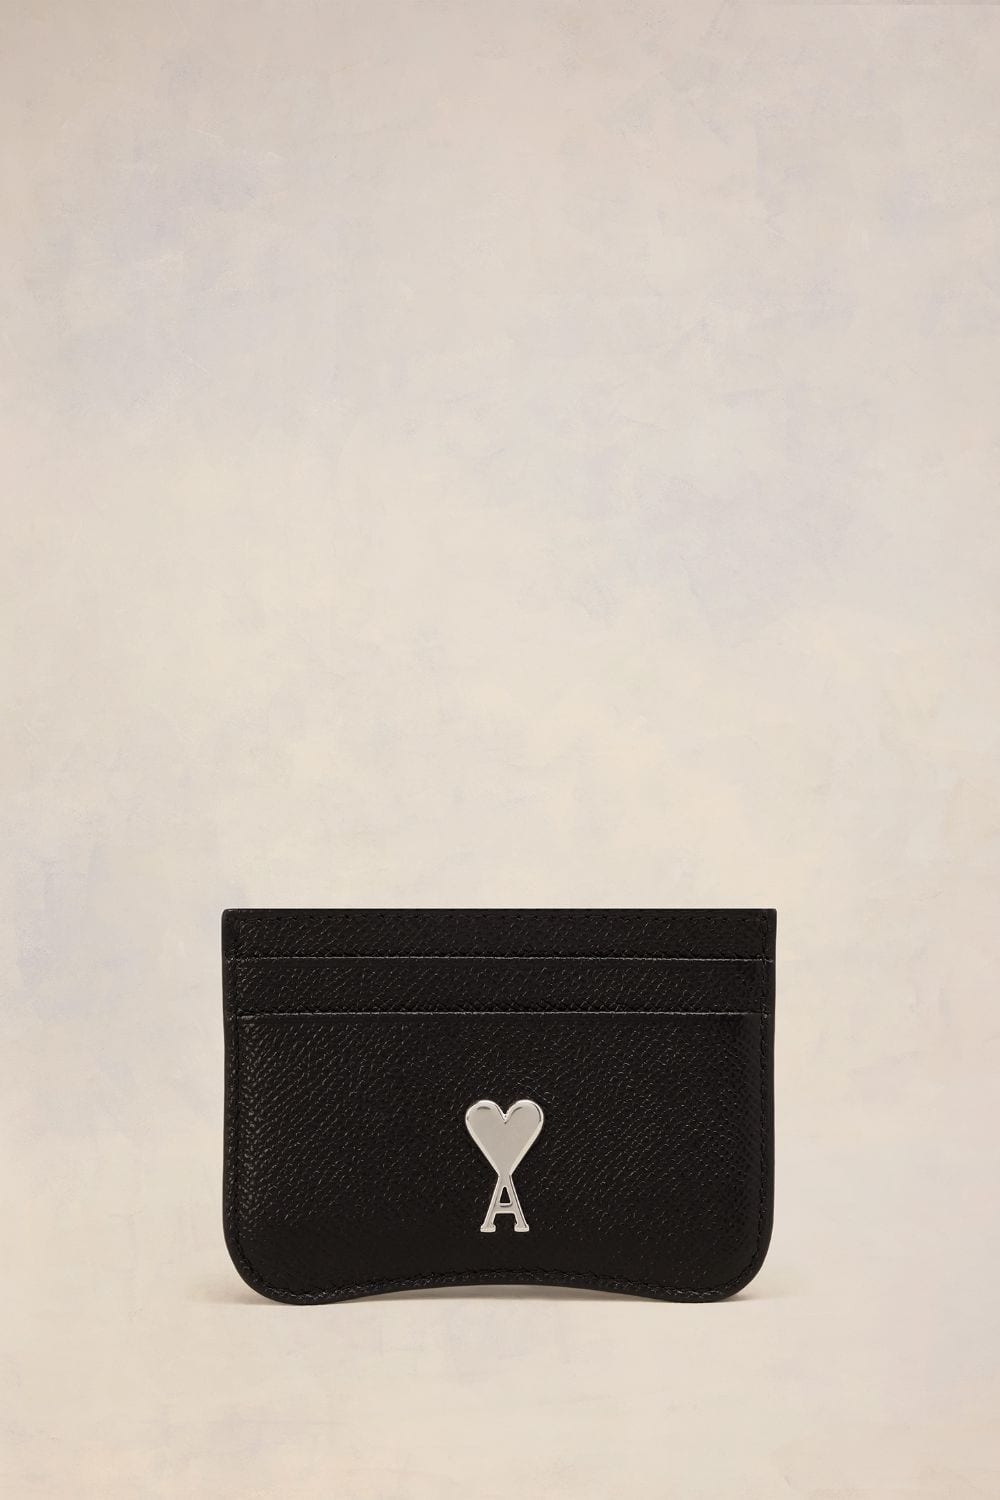 Ami Alexandre Mattiussi Paris Paris Card Holder Black Unisex